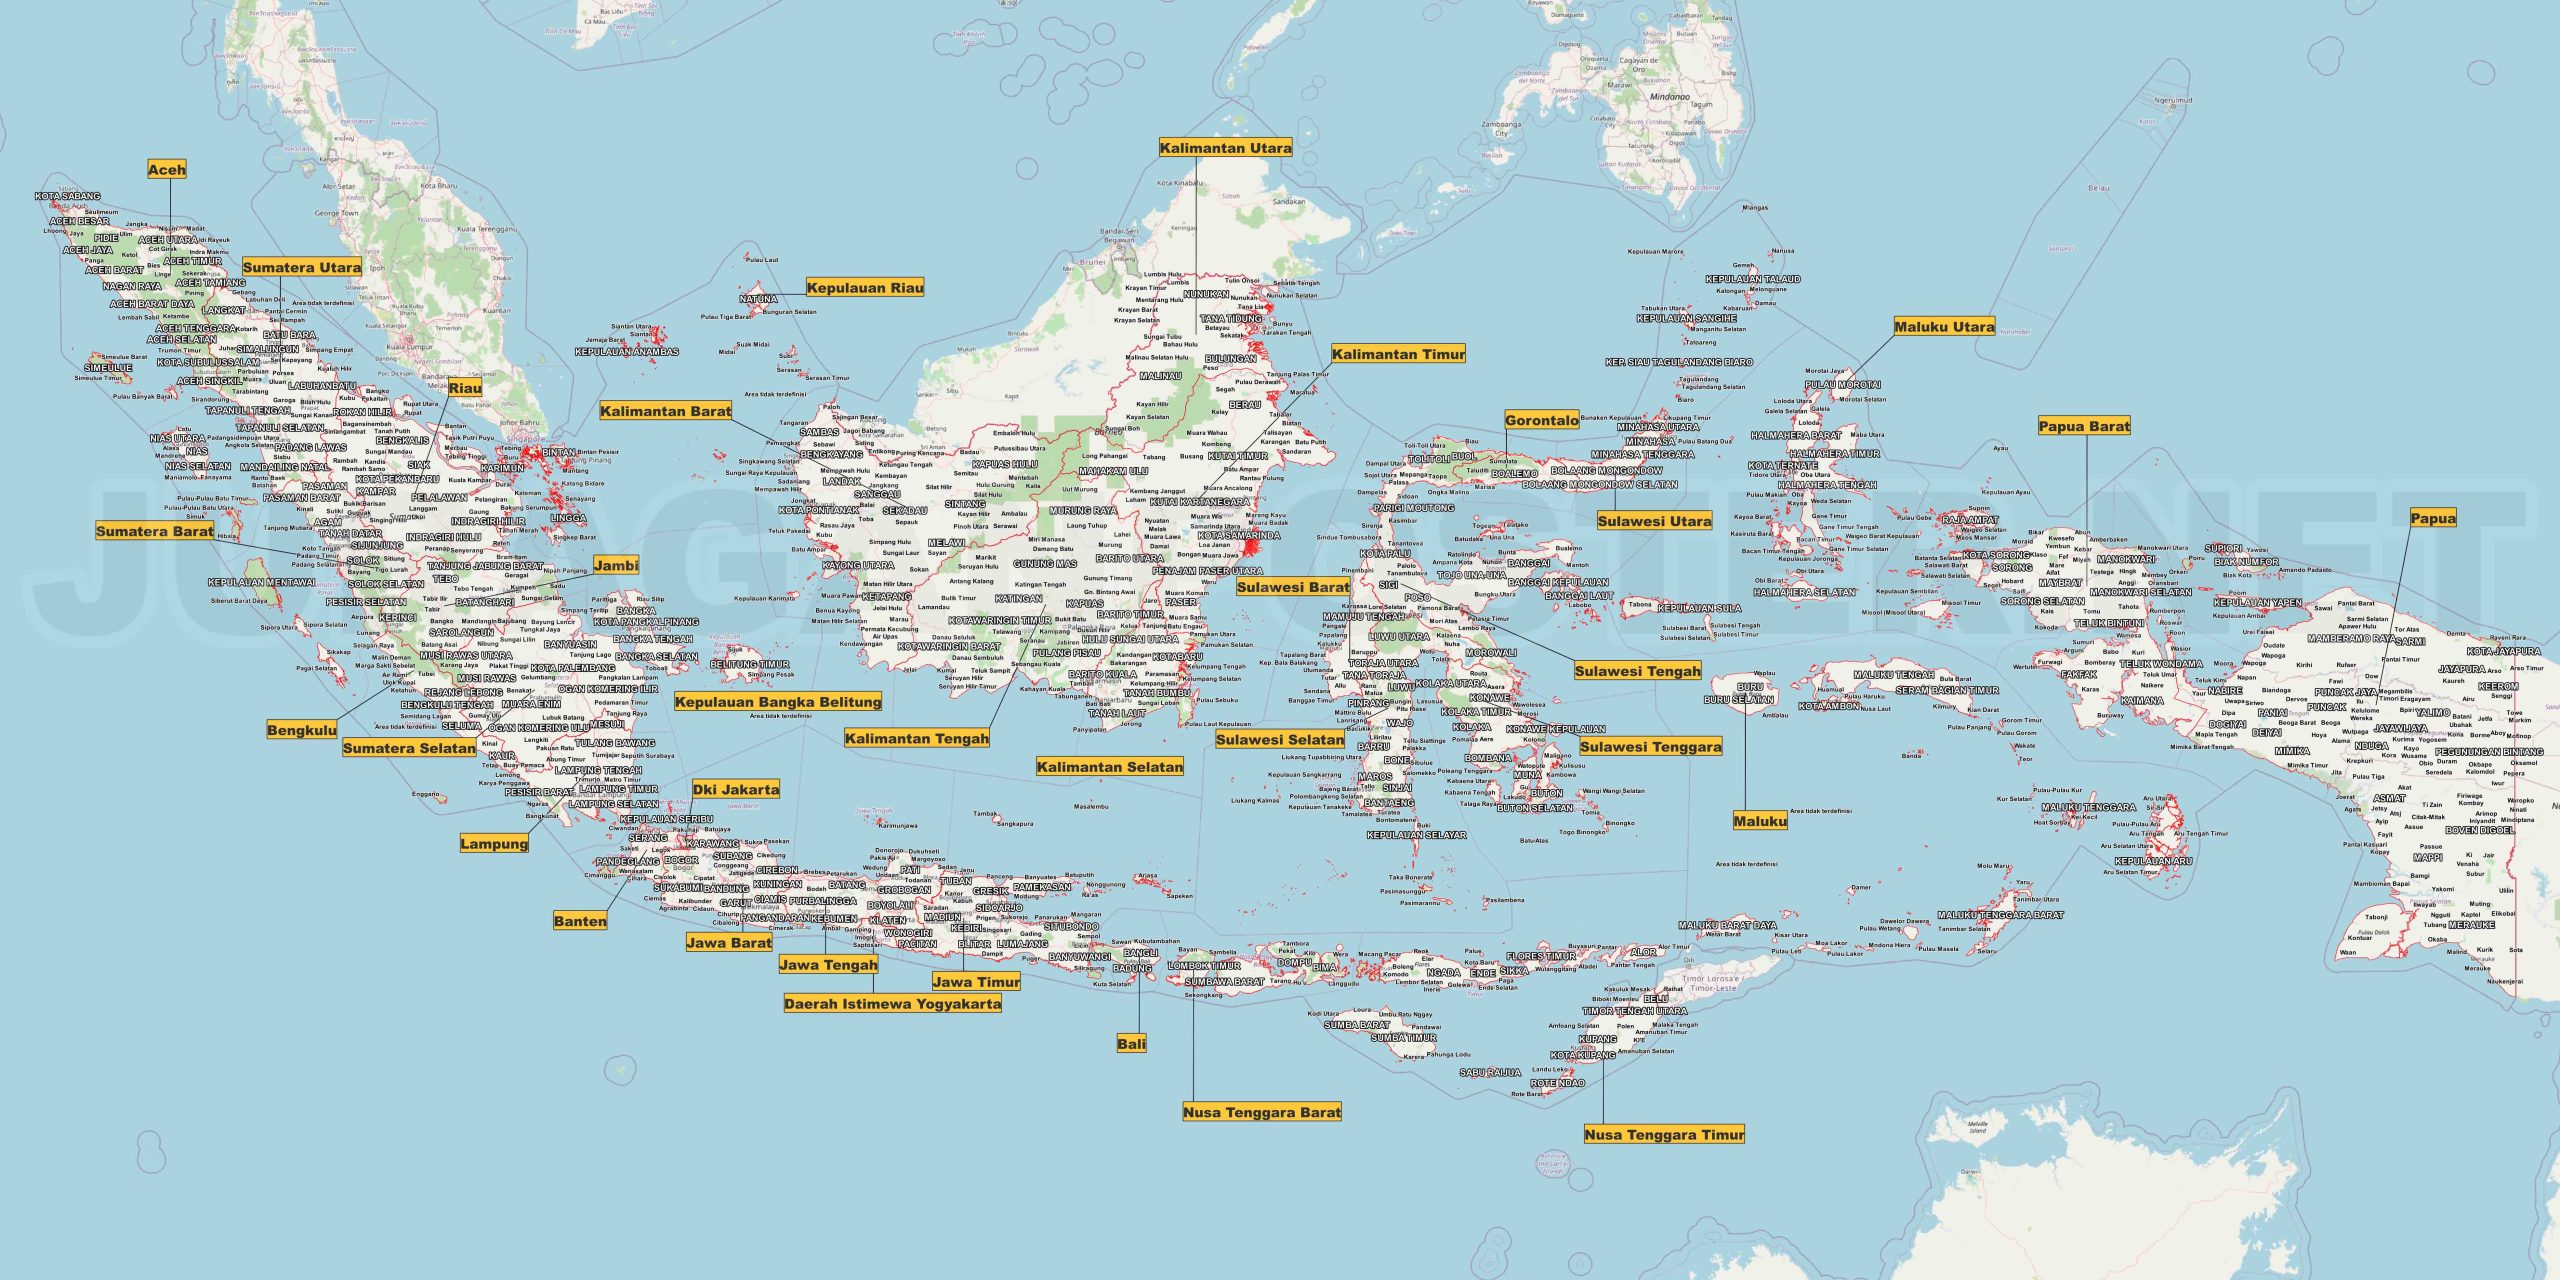 Download Gambar Peta Indonesia: Sumber Gambar Peta Nusantara